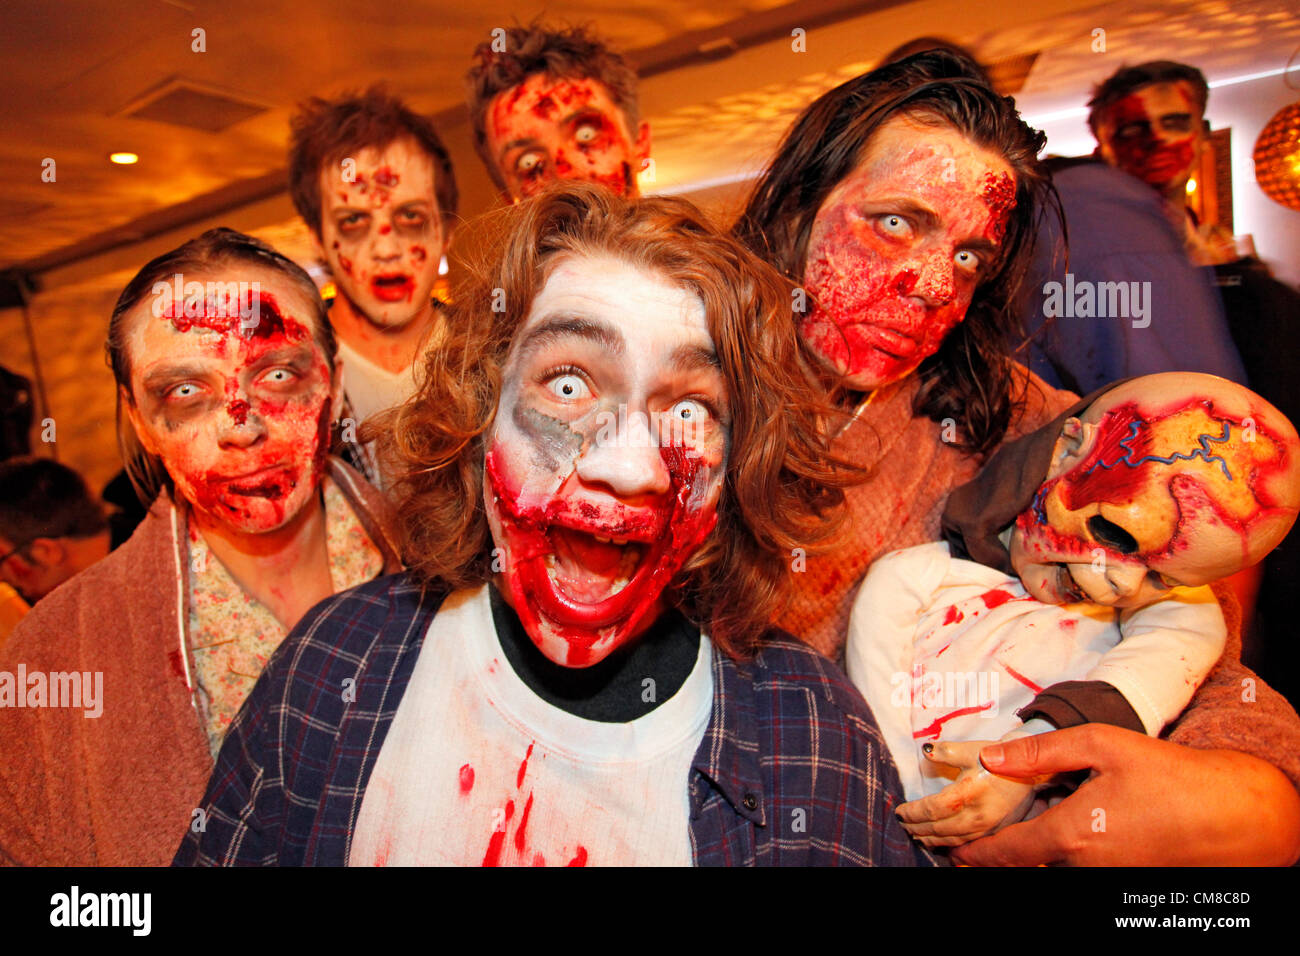 Londra, Regno Unito. Il 27 ottobre 2012. Persone vestite come zombie celebrare Halloween in costume su un pub crawl a Londra Halloween Zombie a piedi 2012. Foto Stock